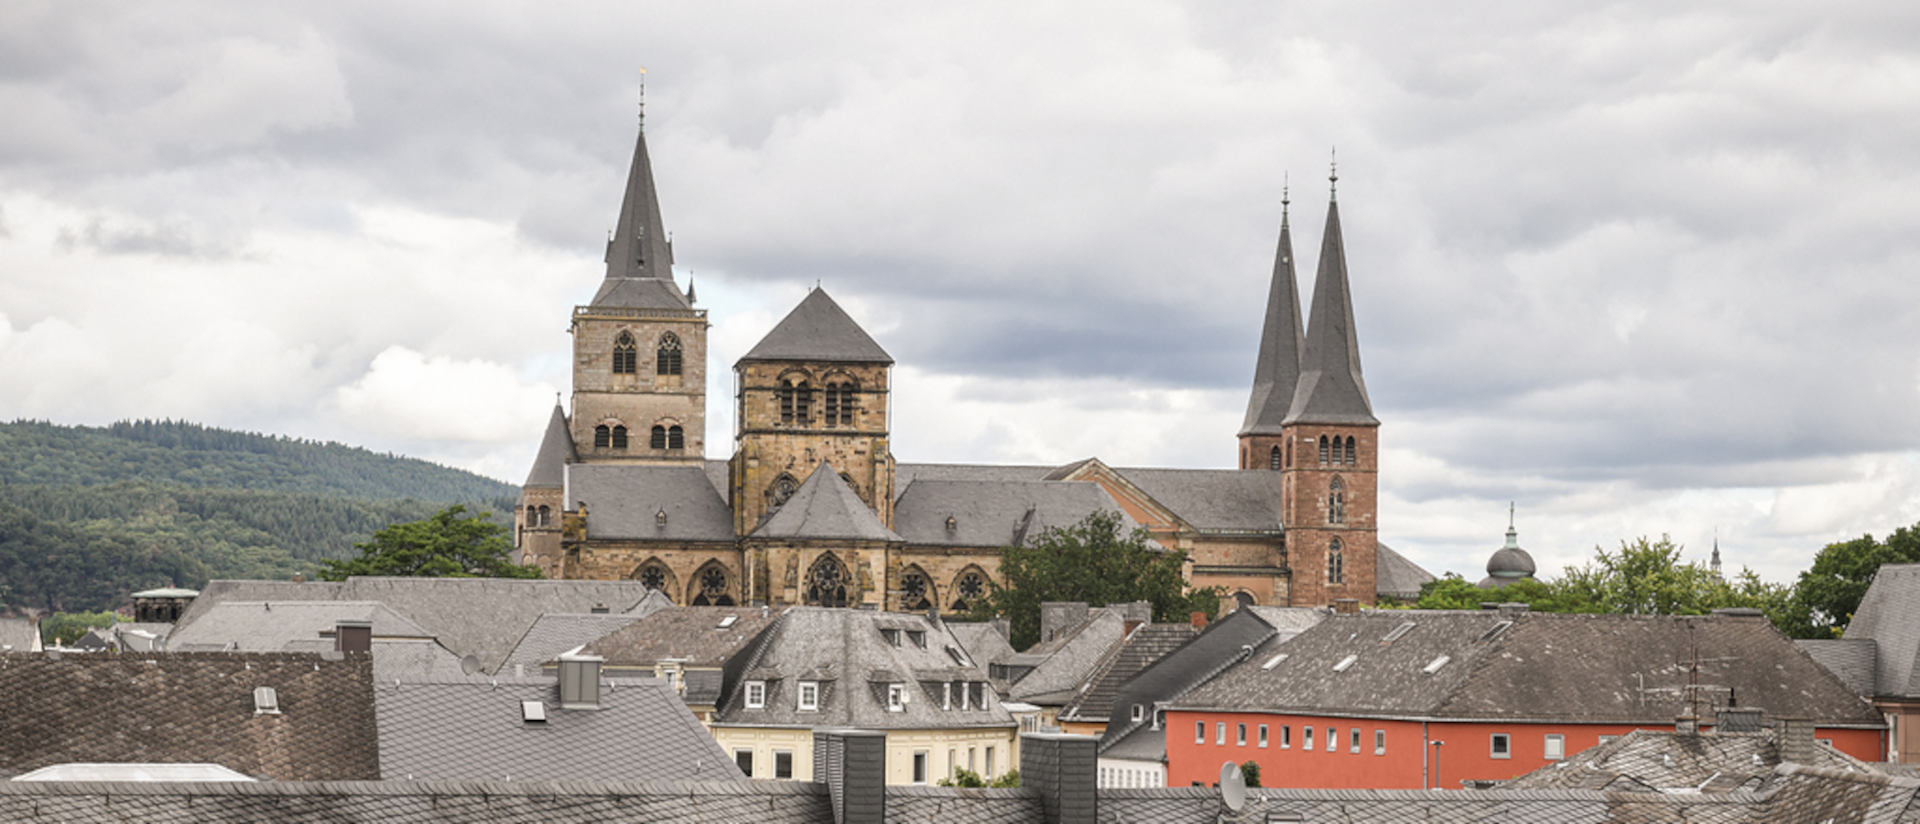 Blick über die Dächer von Trier auf die Liebfrauenkirche und dahinter den Dom Sankt Petrus am 20. August 2021.